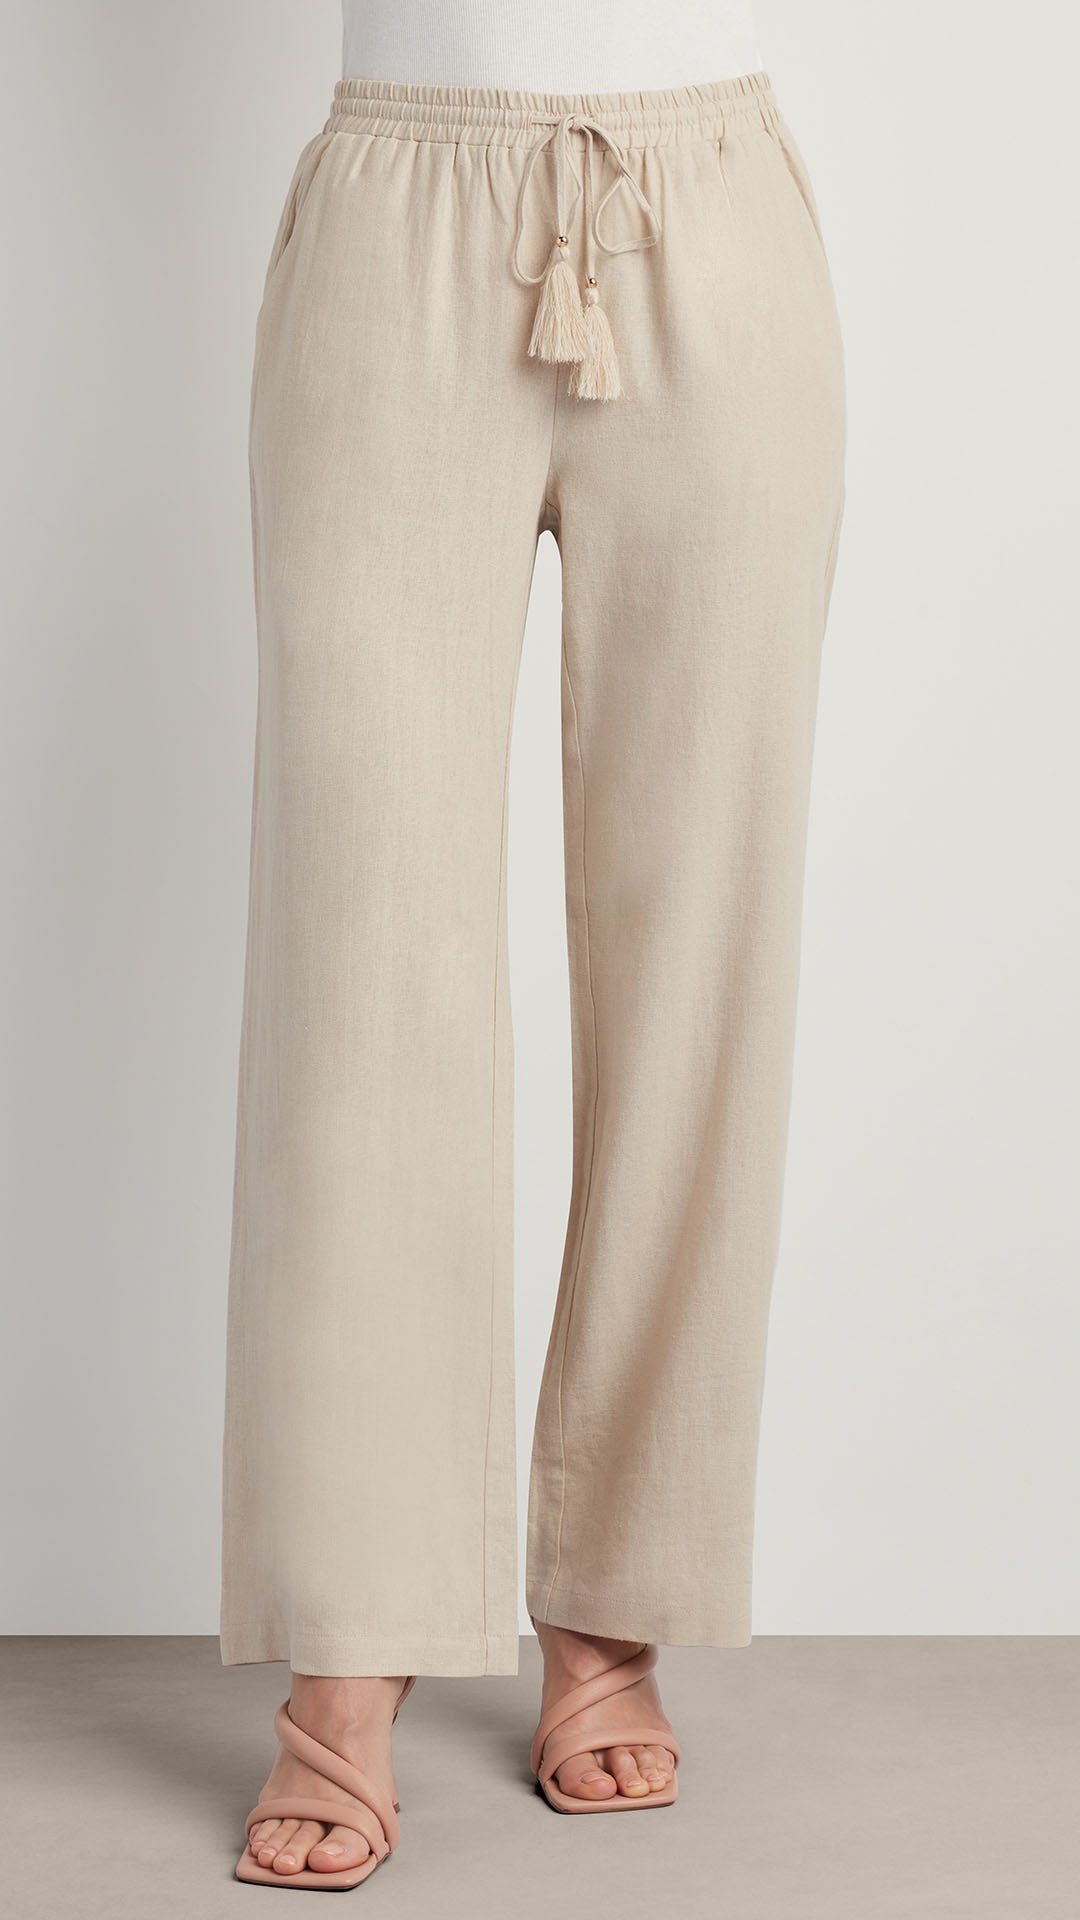 Cotonie Women's Cotton Linen Wide Leg Pants Casual Drawstring